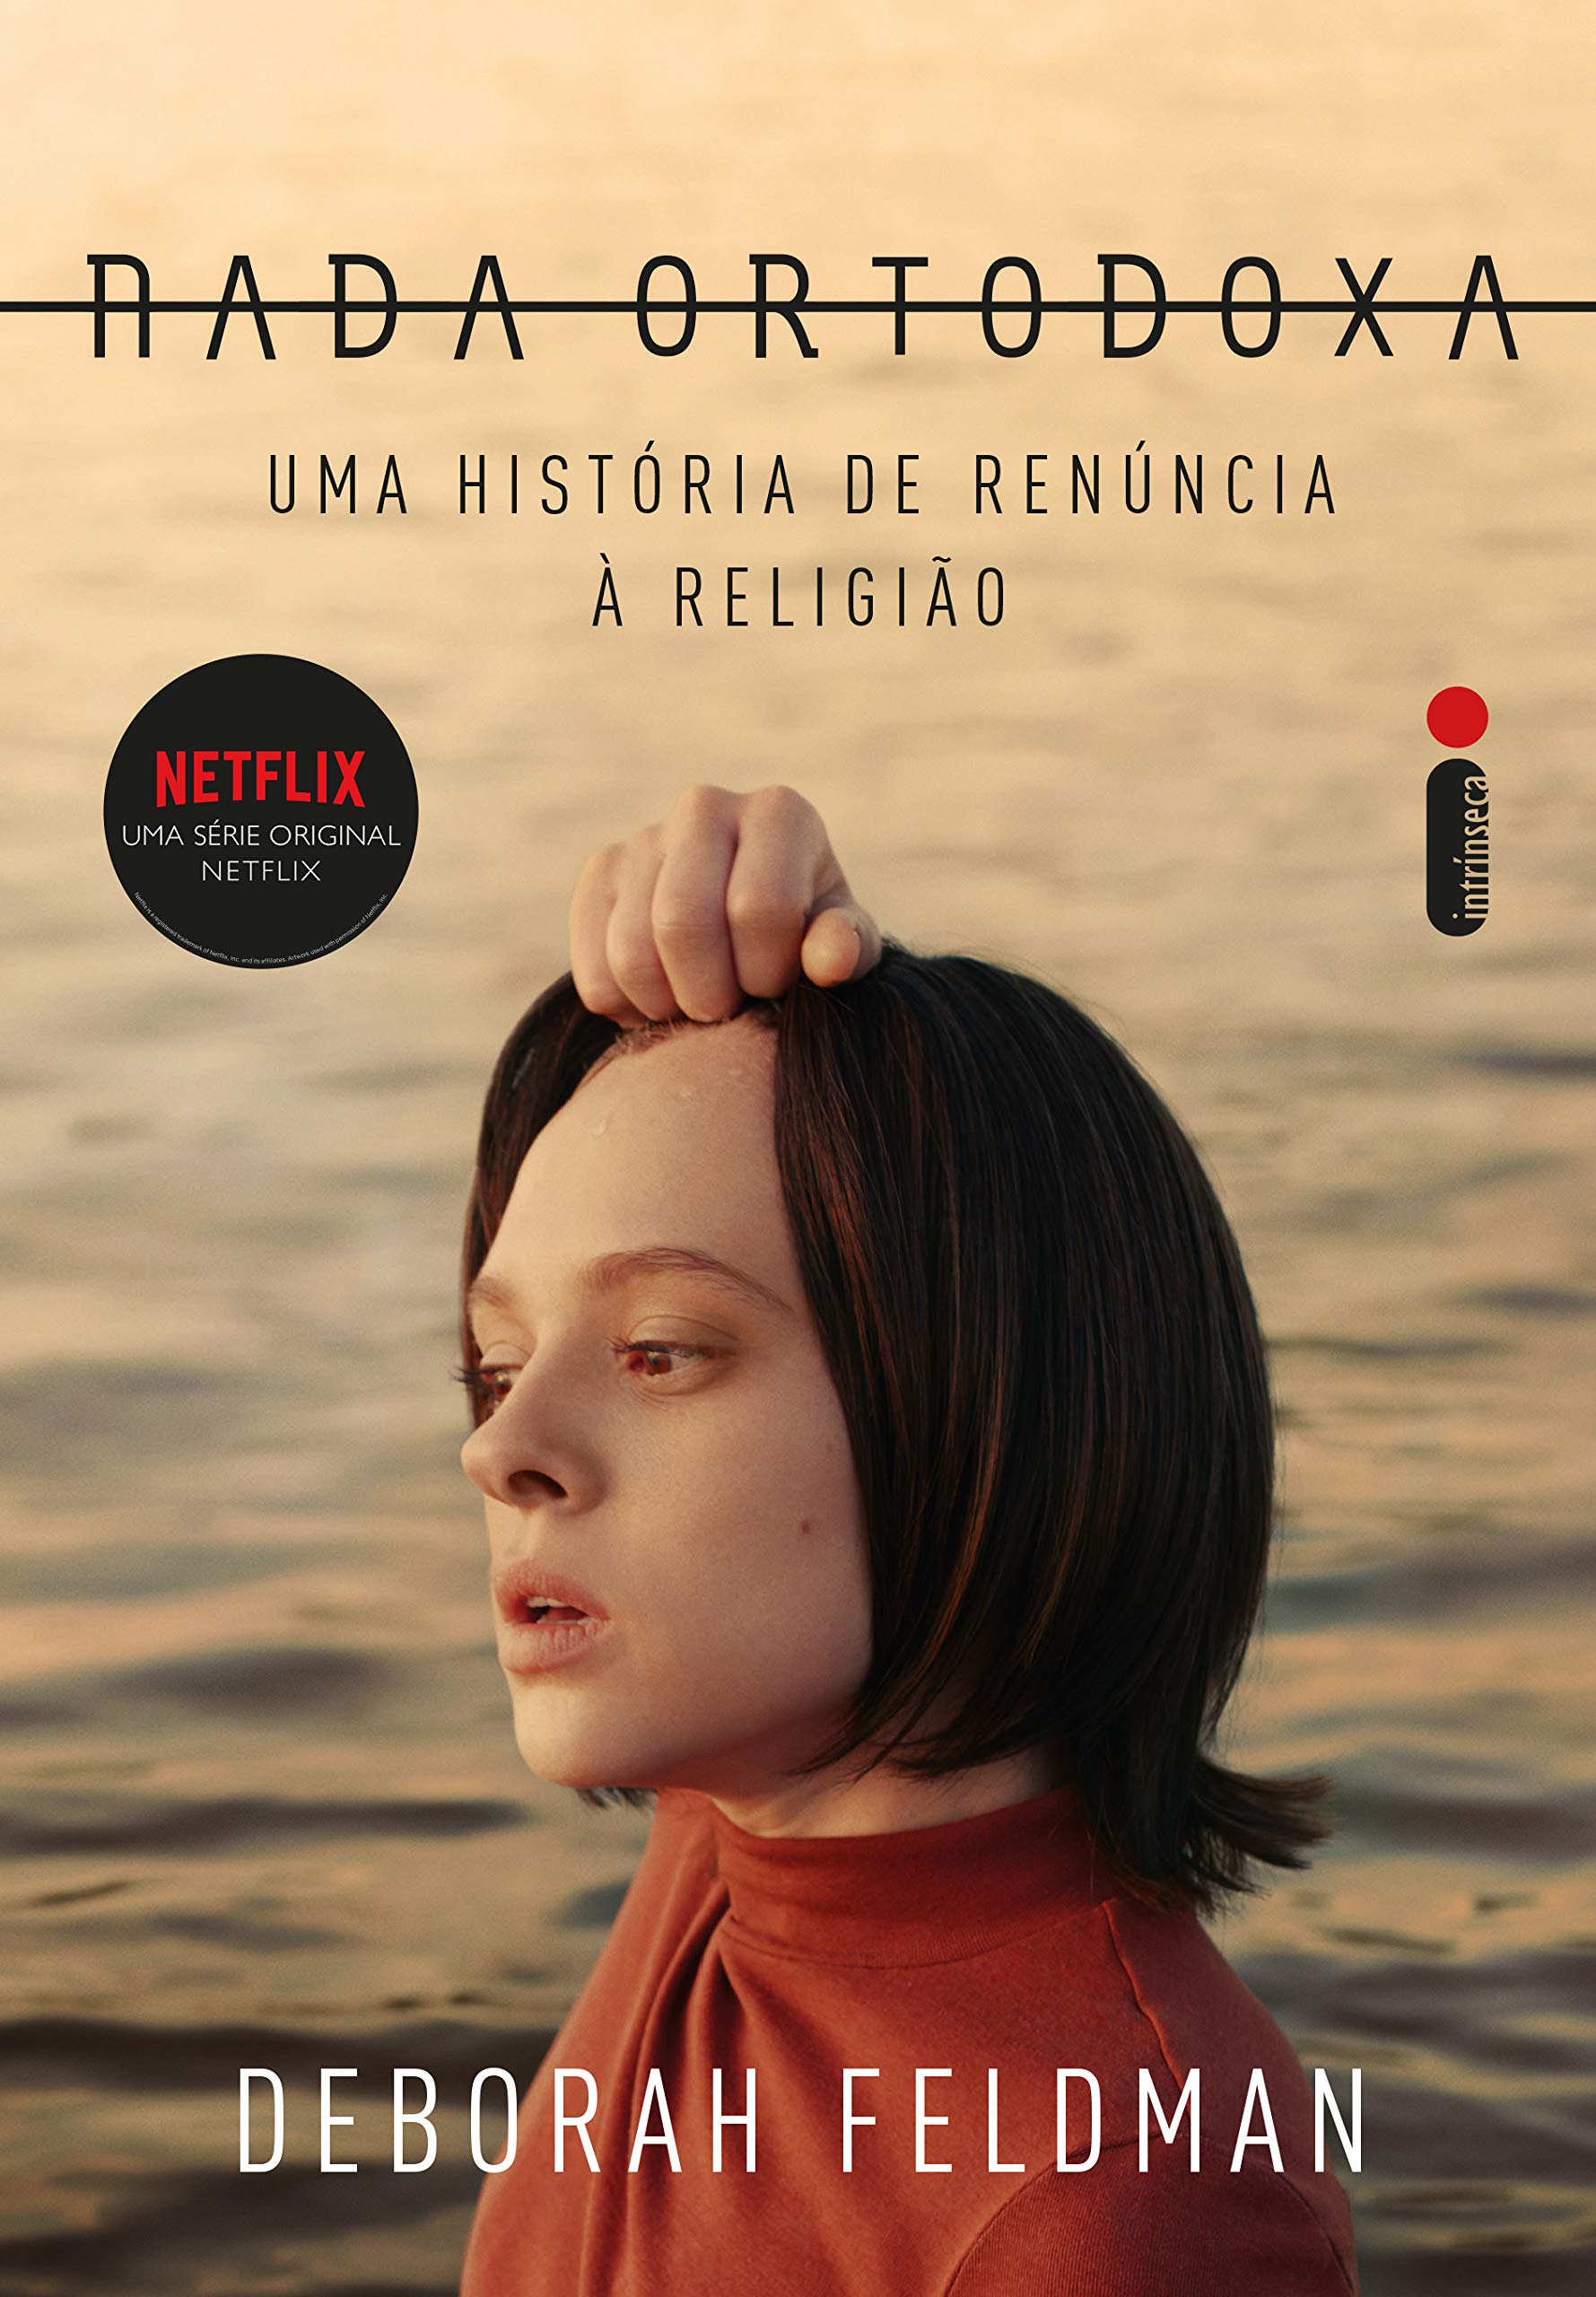 Nada ortodoxa: Uma história de renúncia à religião (Portuguese Edition)